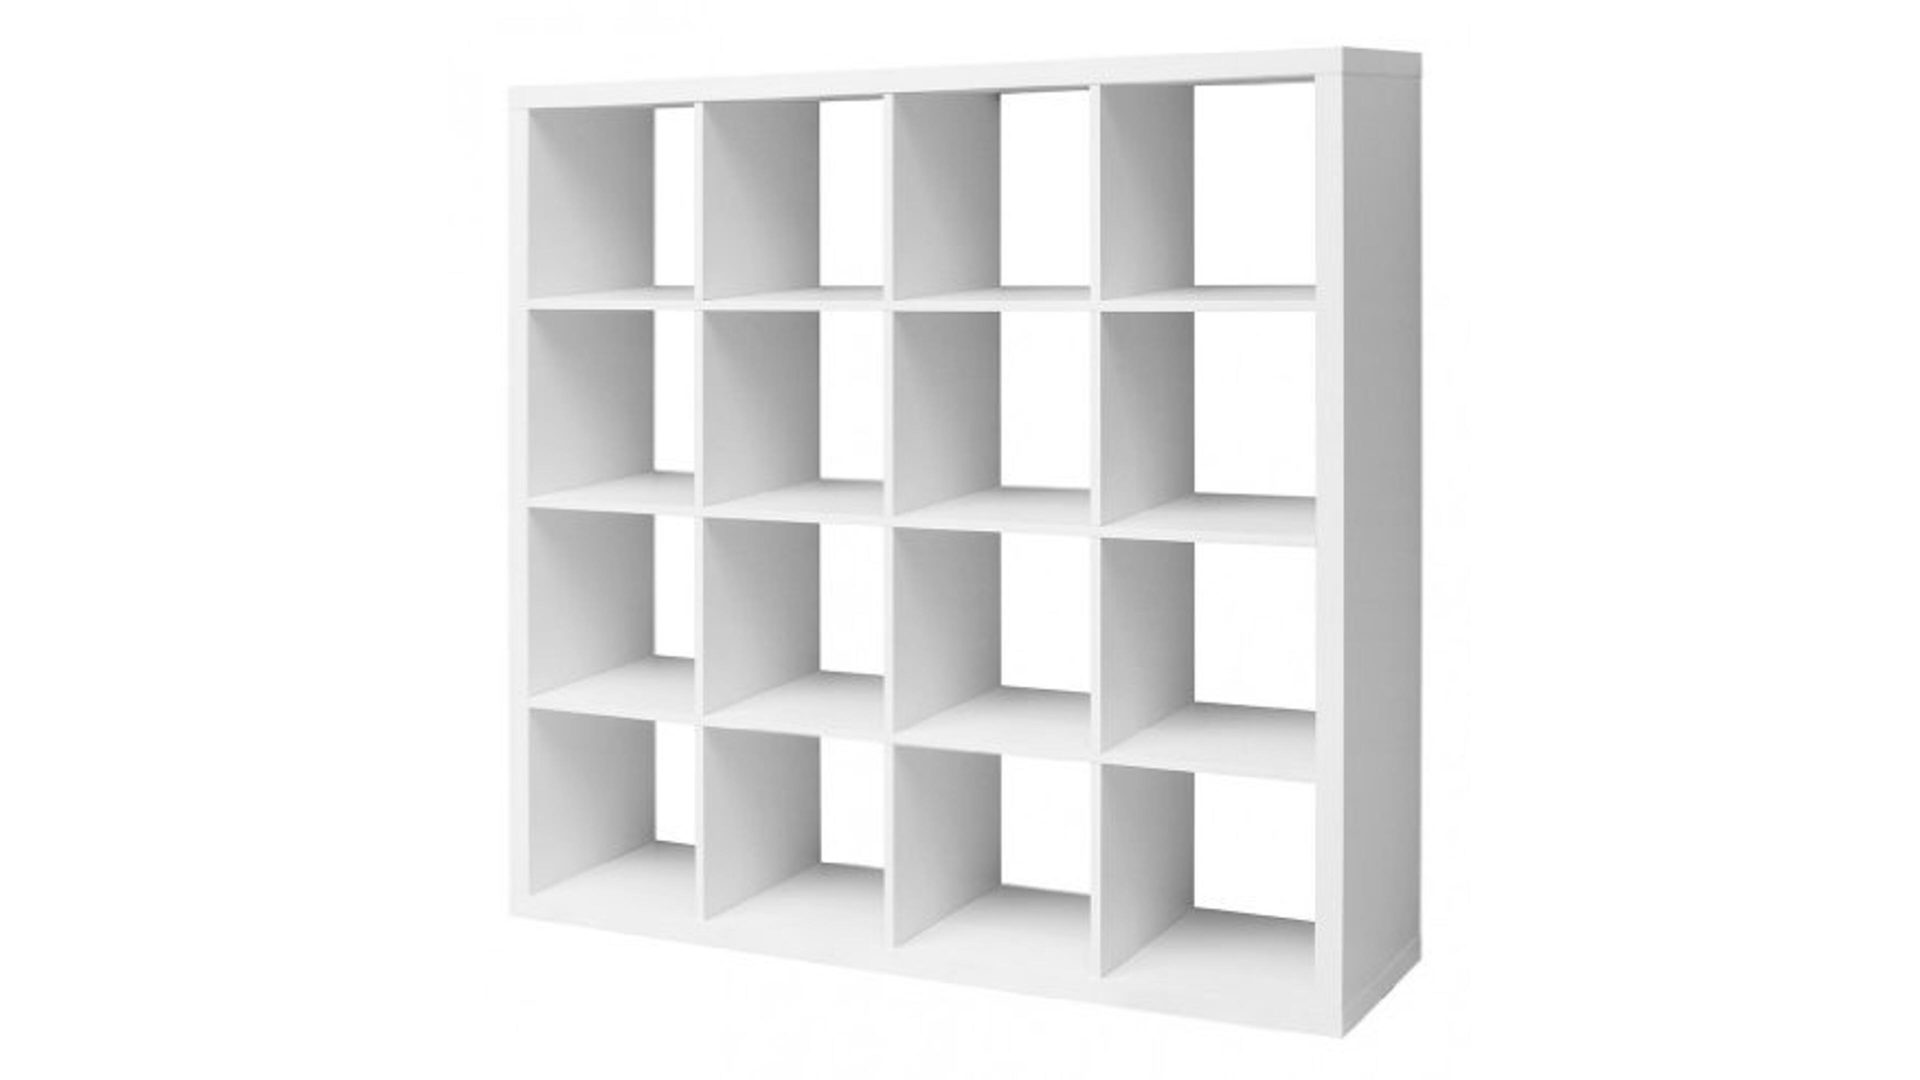 Raumteiler Bega consult aus Holz in Weiß Raumteiler, Wandregal und Bücherregal mattweiße Kunststoffoberflächen - 16  Fächer, ca. 147 x 147 x 38 cm